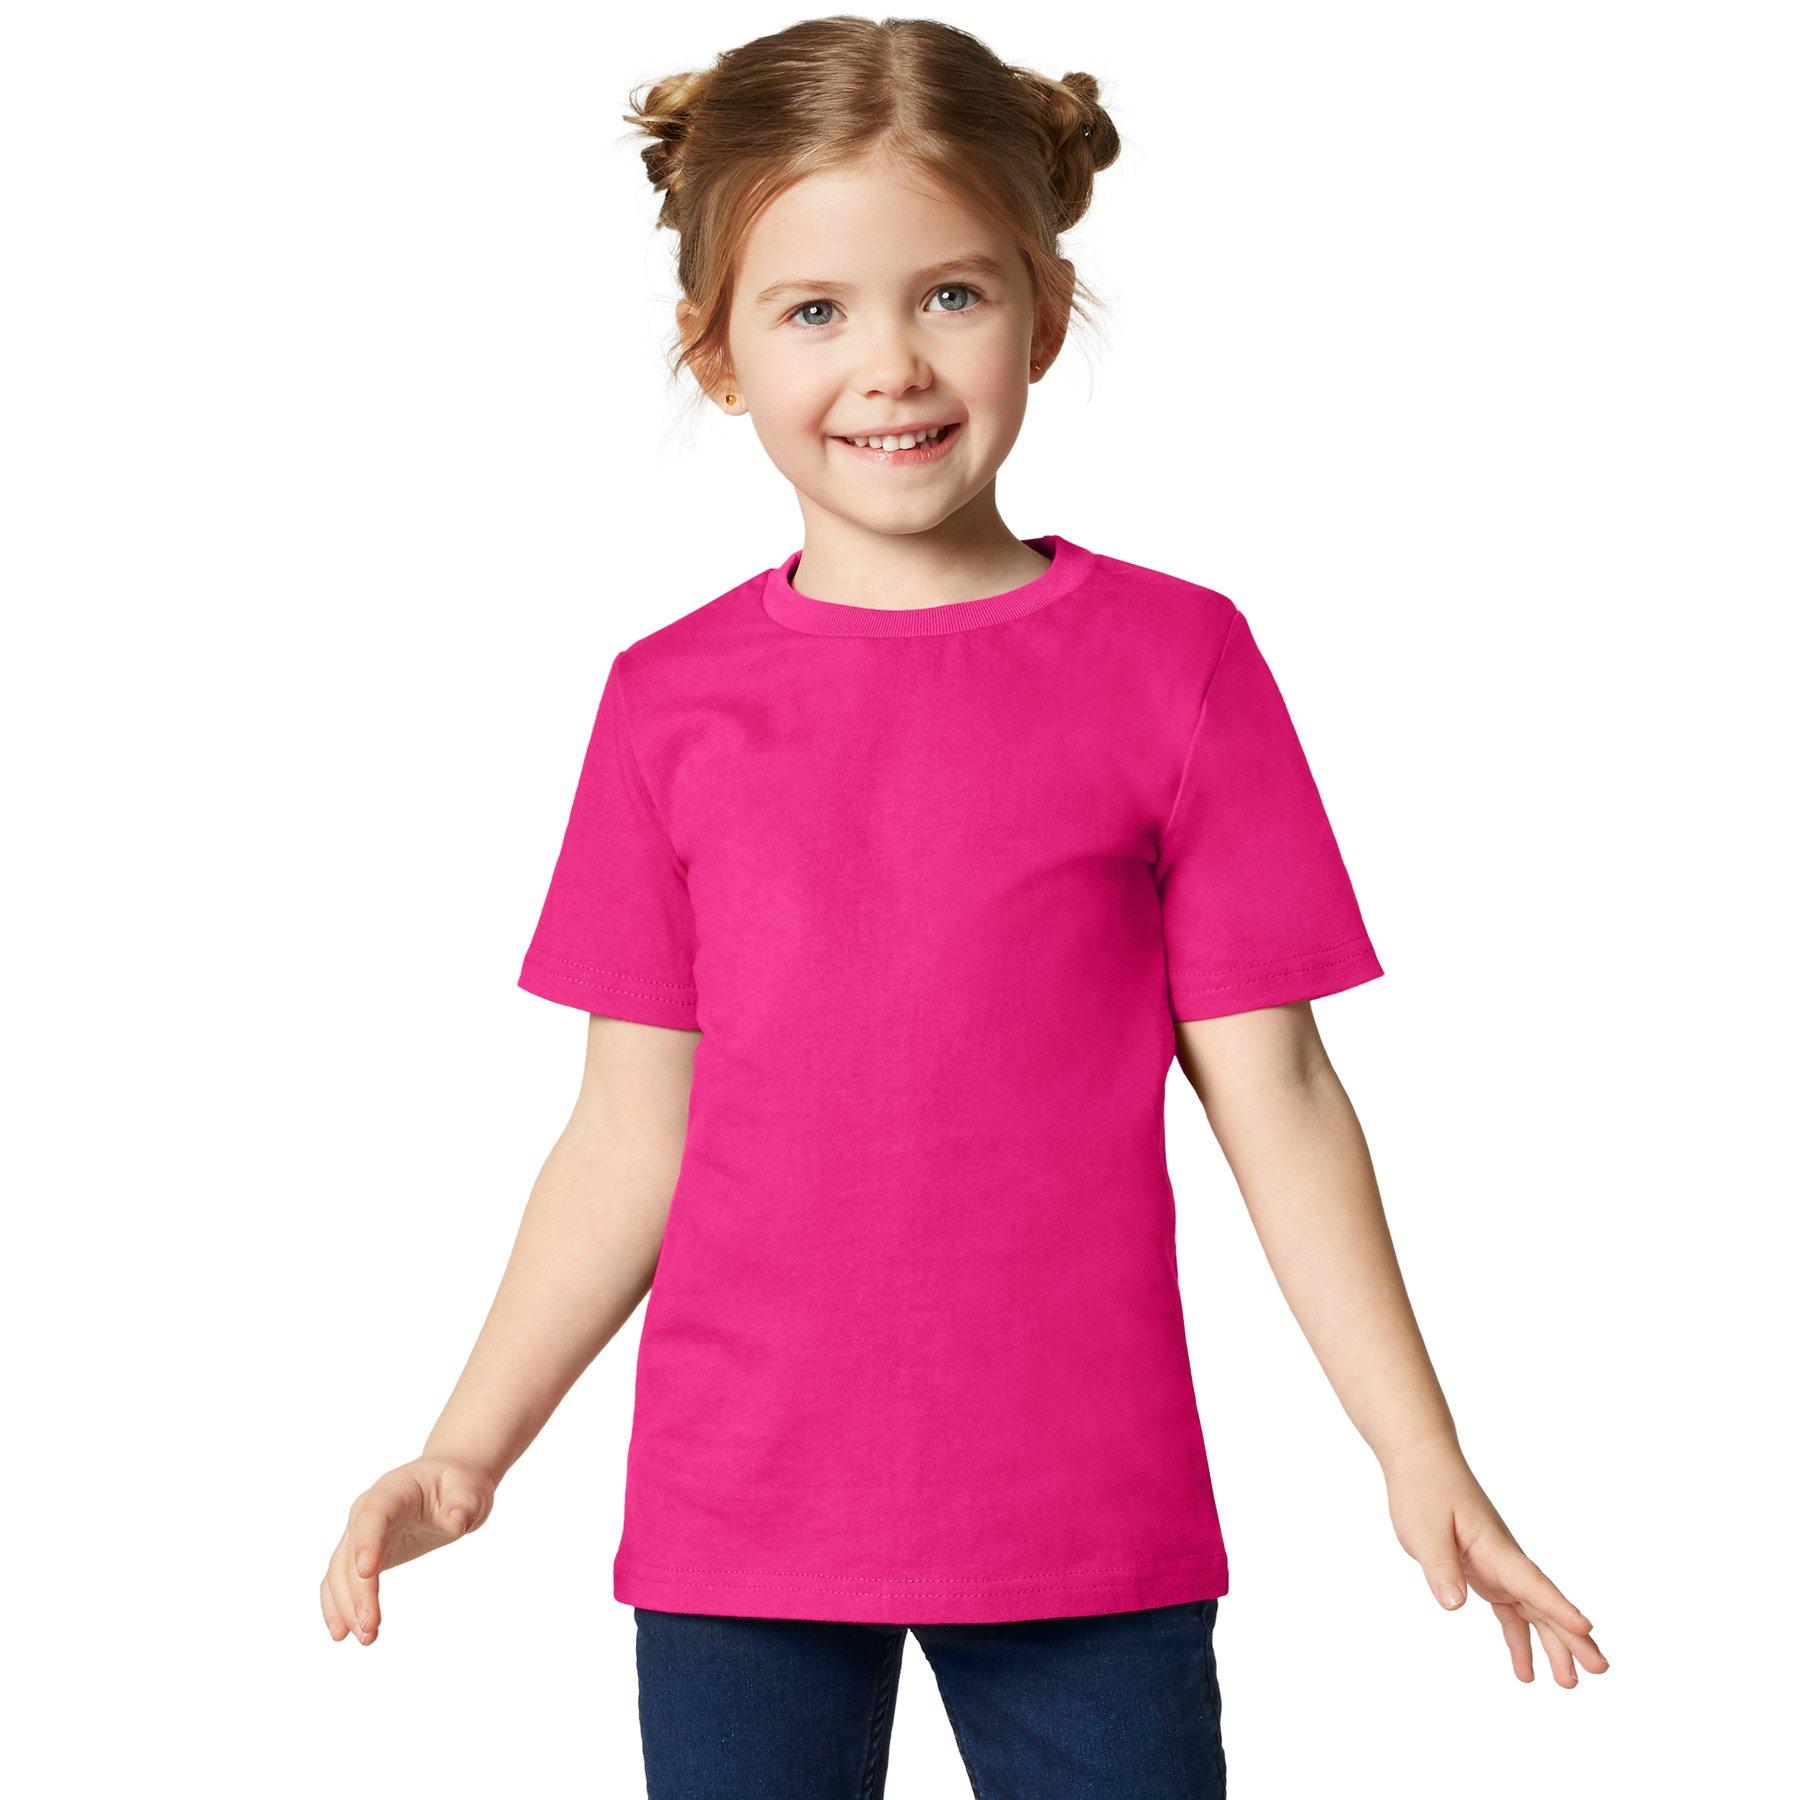 T-shirt Kinder Jungen Pink 116 von Tectake